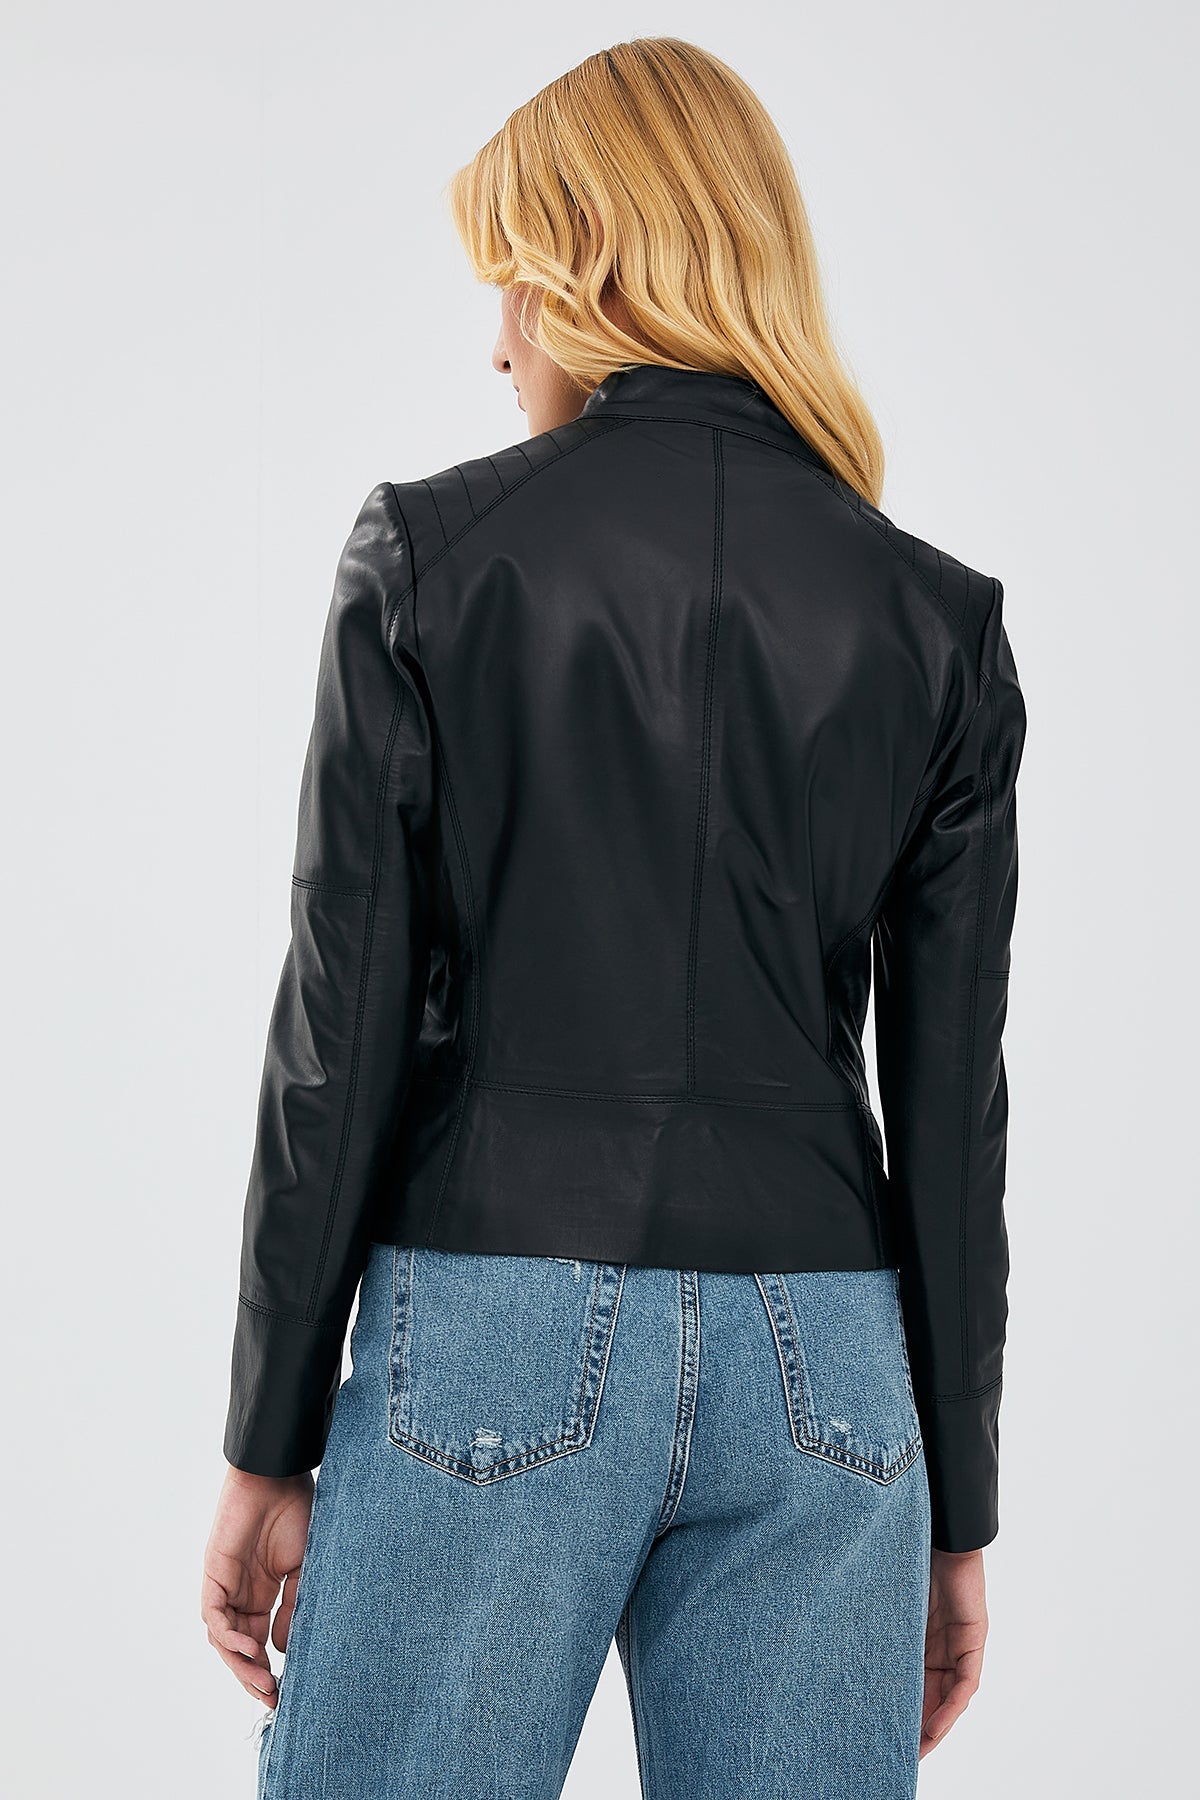 Mary Women's Black Leather Jacket